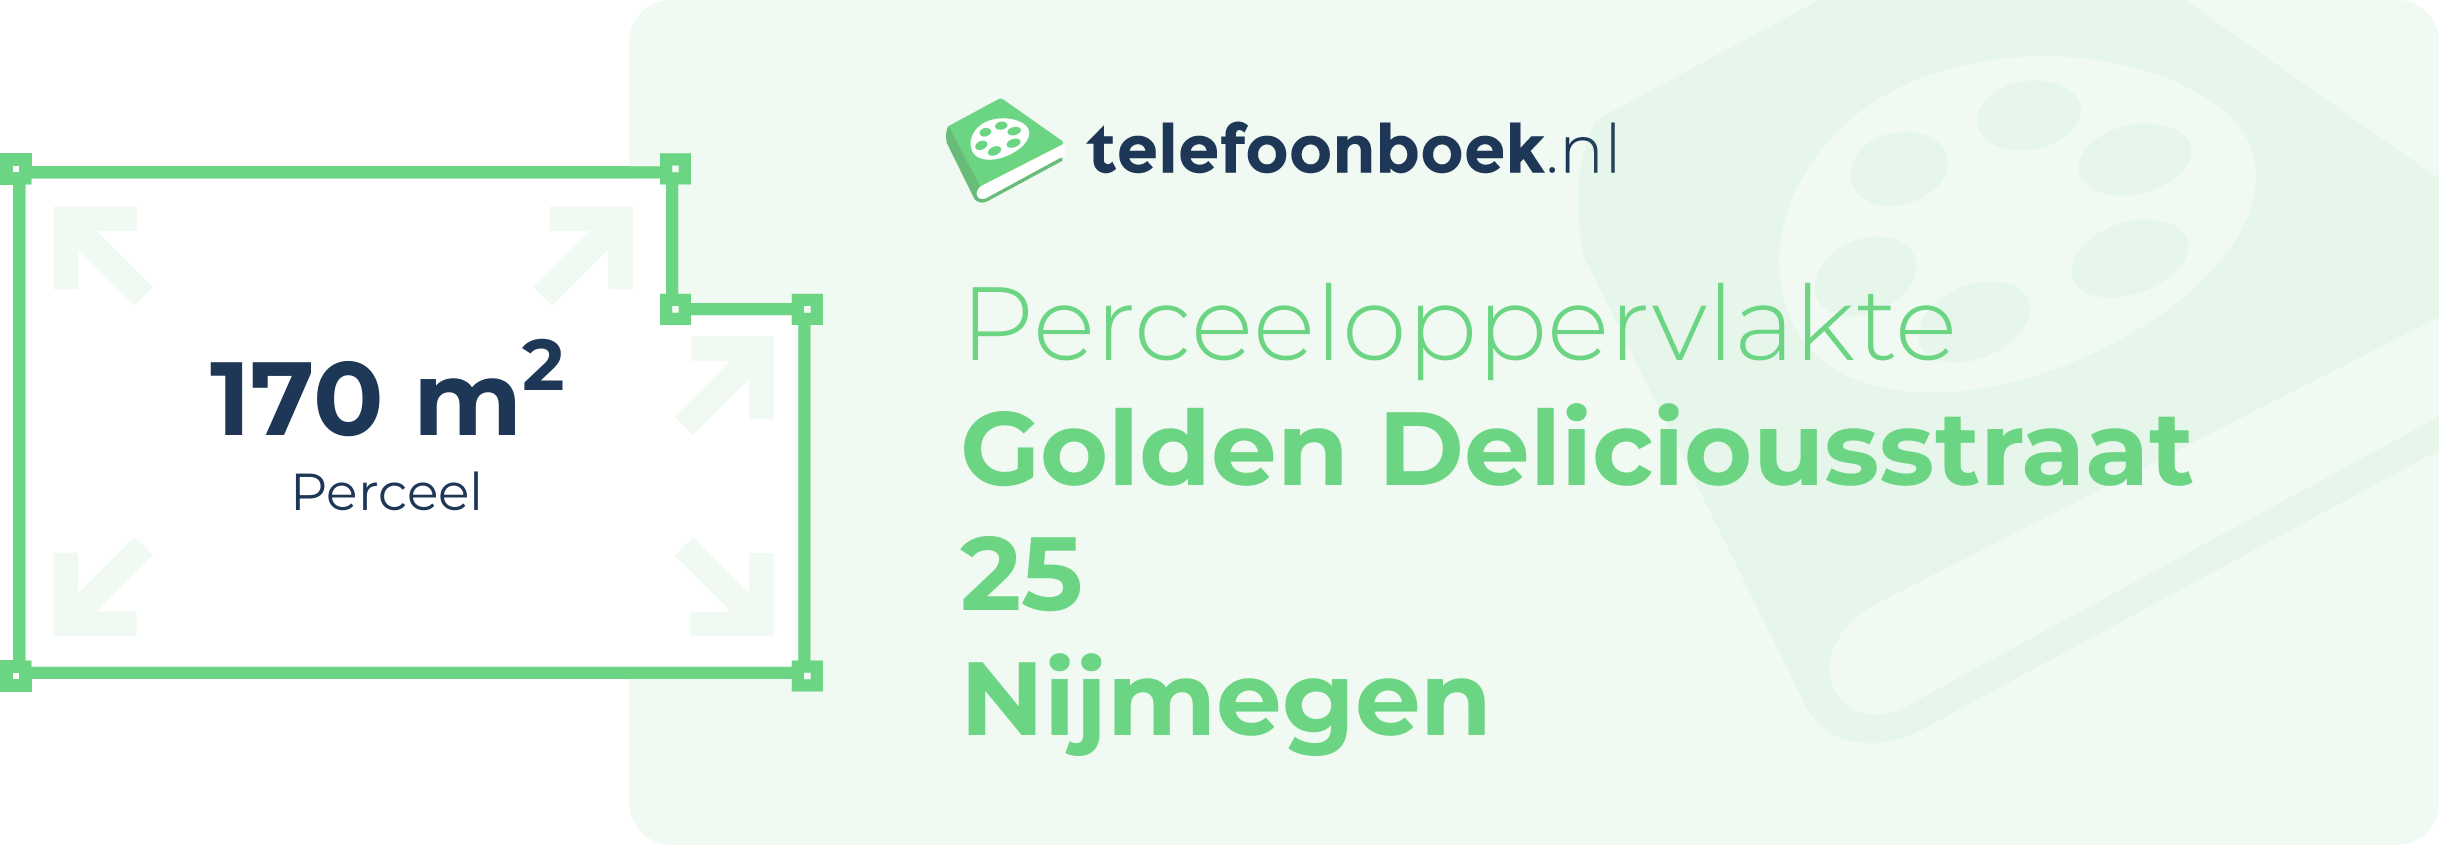 Perceeloppervlakte Golden Deliciousstraat 25 Nijmegen